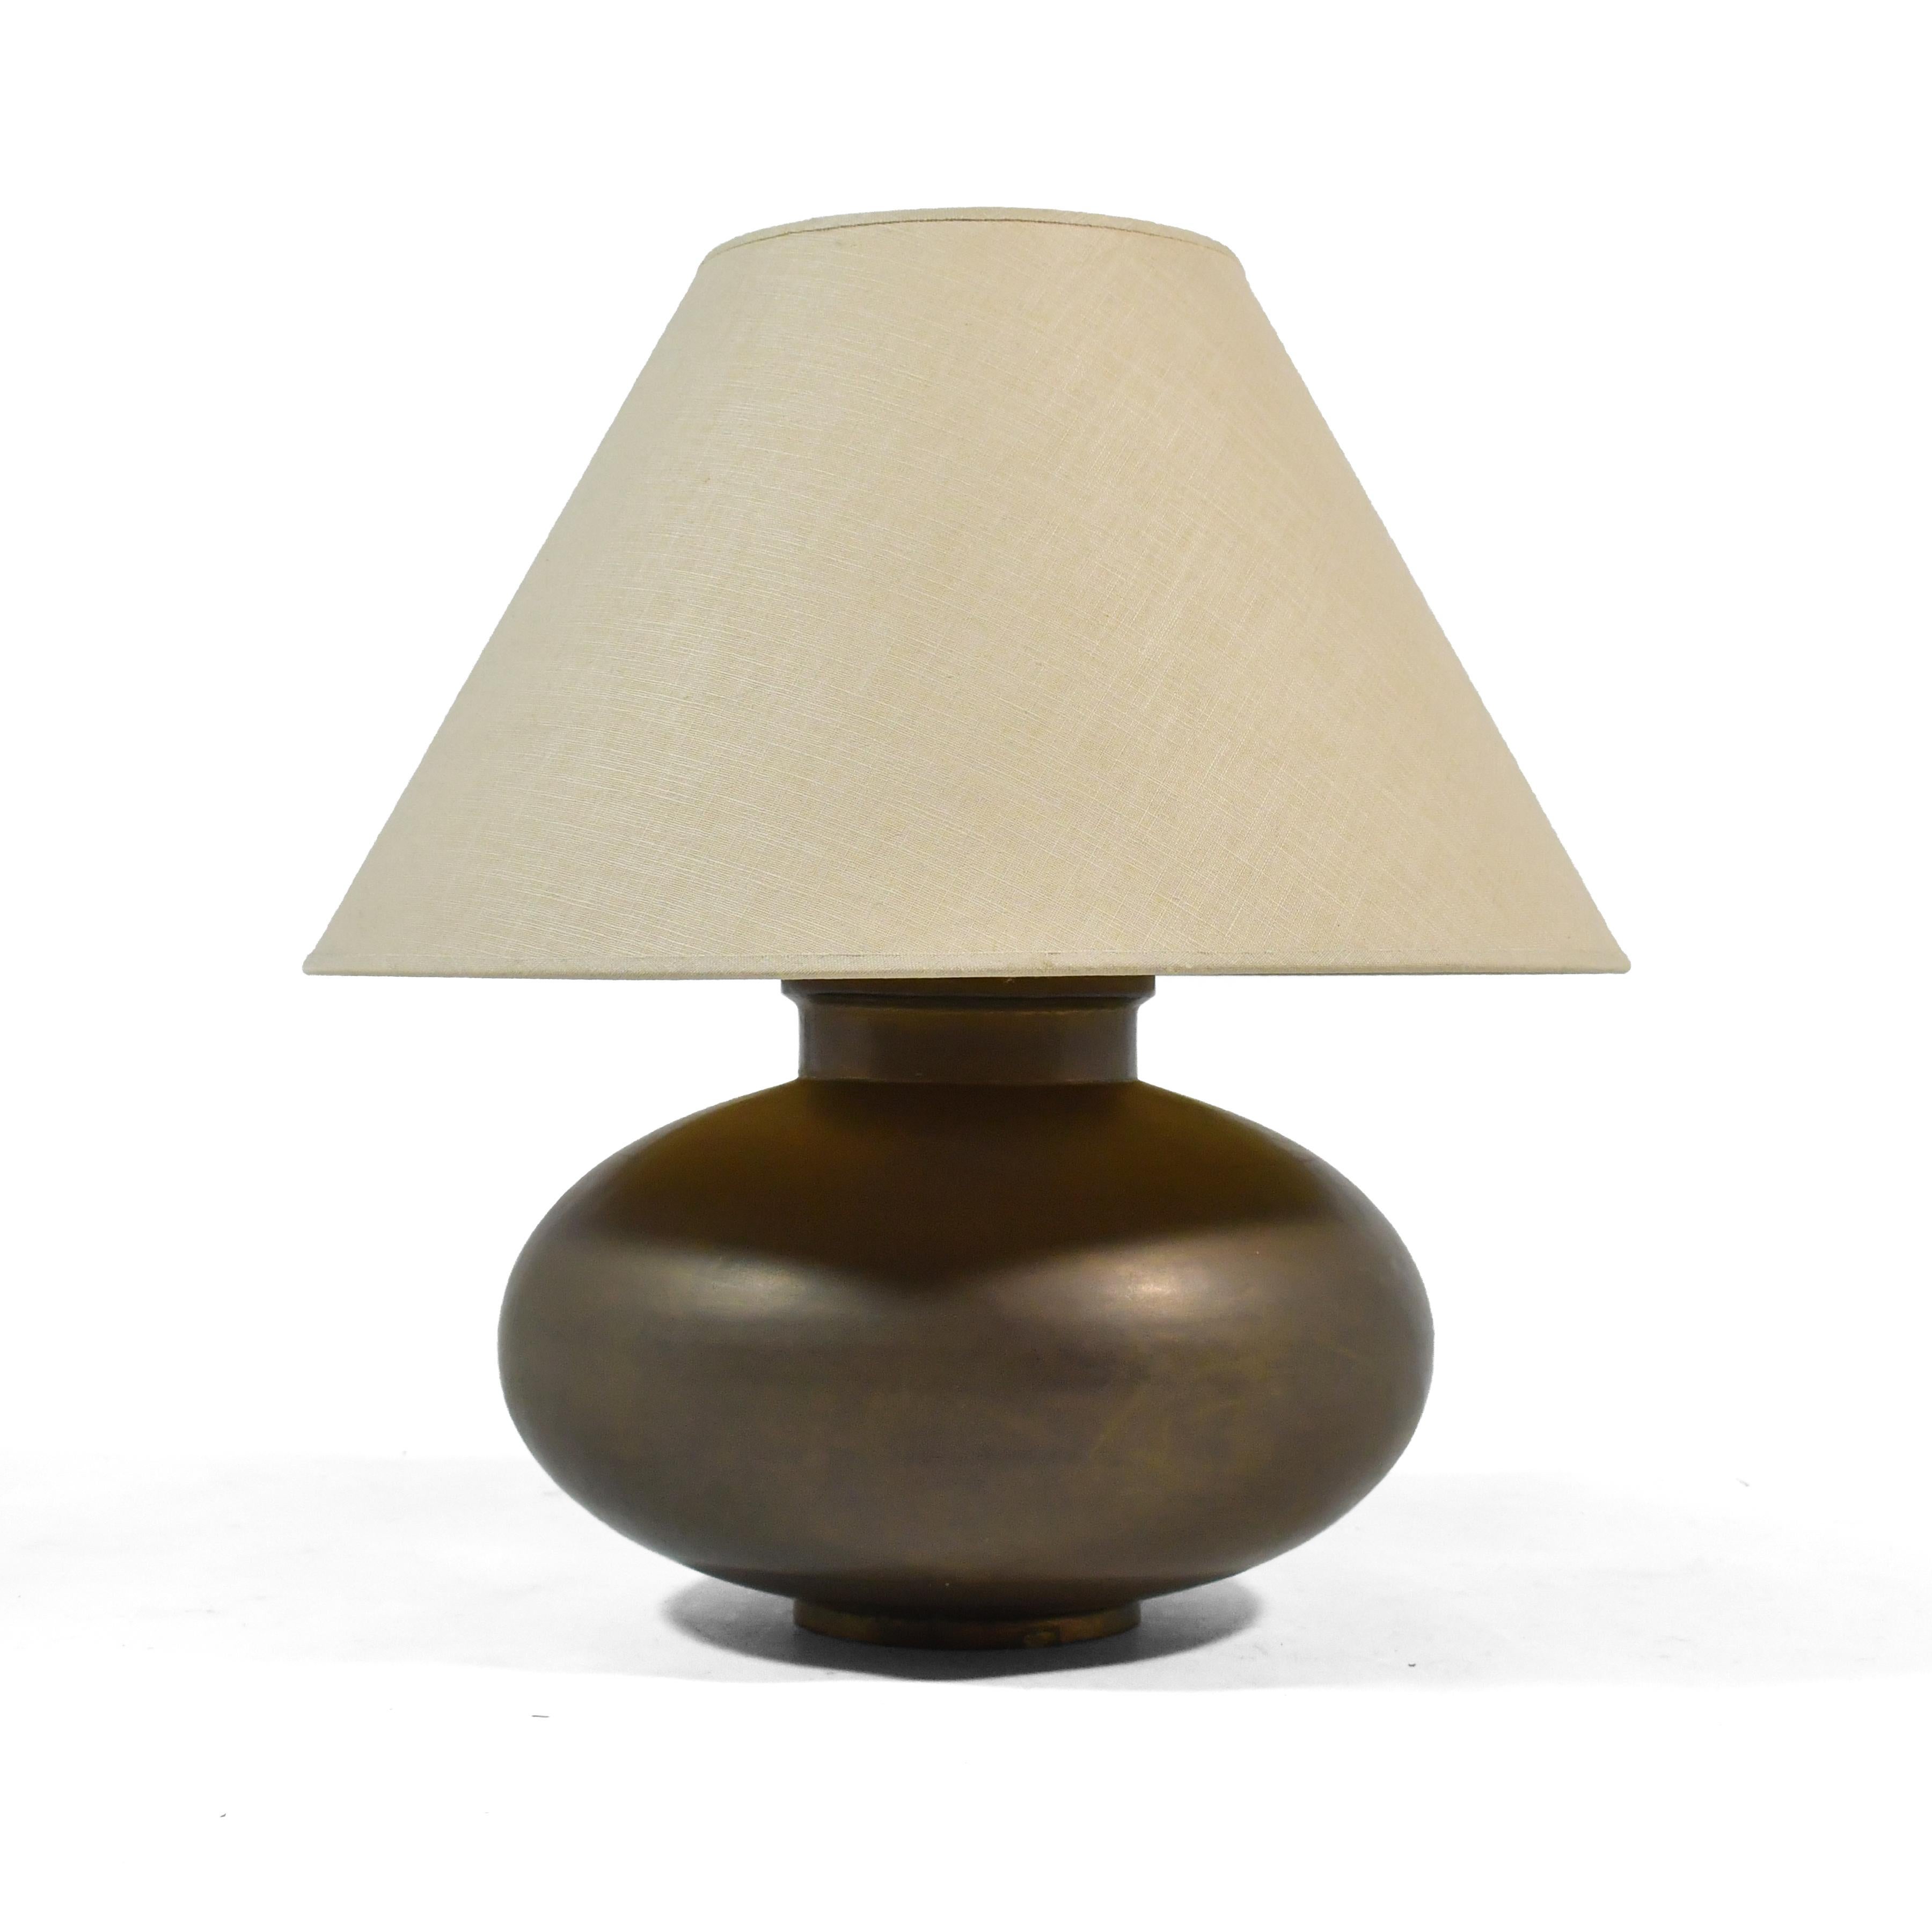 D'une beauté subtile, cette lampe de table a une base en laiton avec une forme d'orbe agréable et une riche patine d'âge.

Mesures : 22